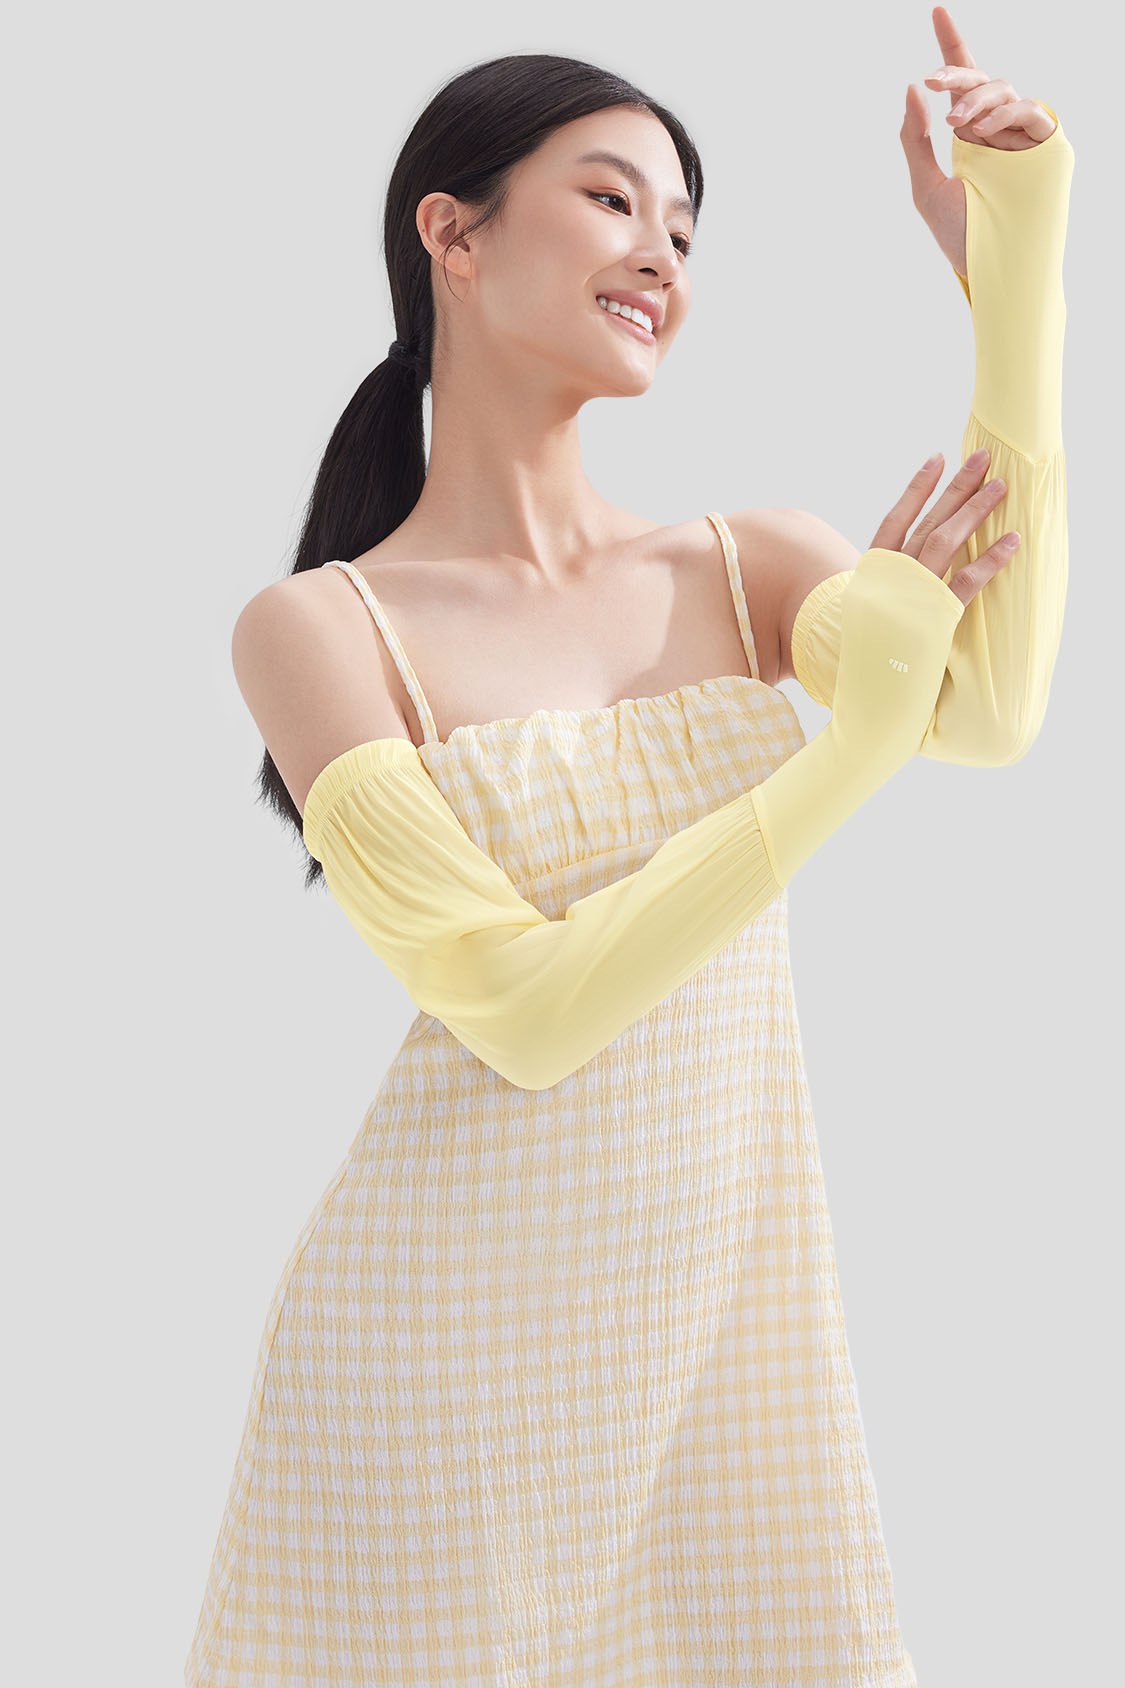 beneunder women's sun protection arm sleeves #color_gardenia yellow